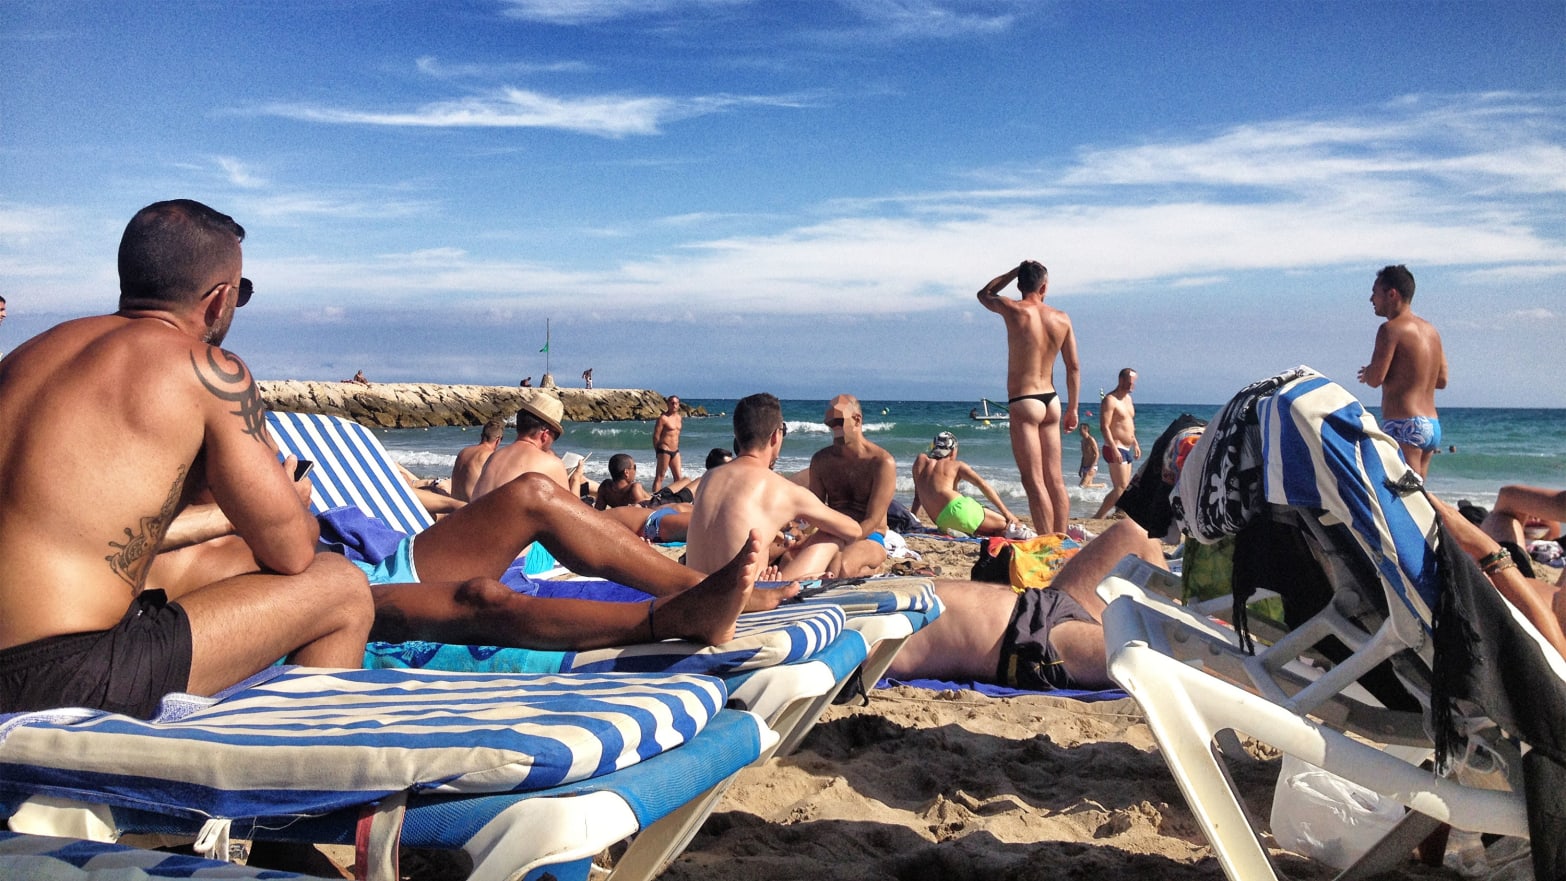 Best Nude Beaches Pictures worn underwear